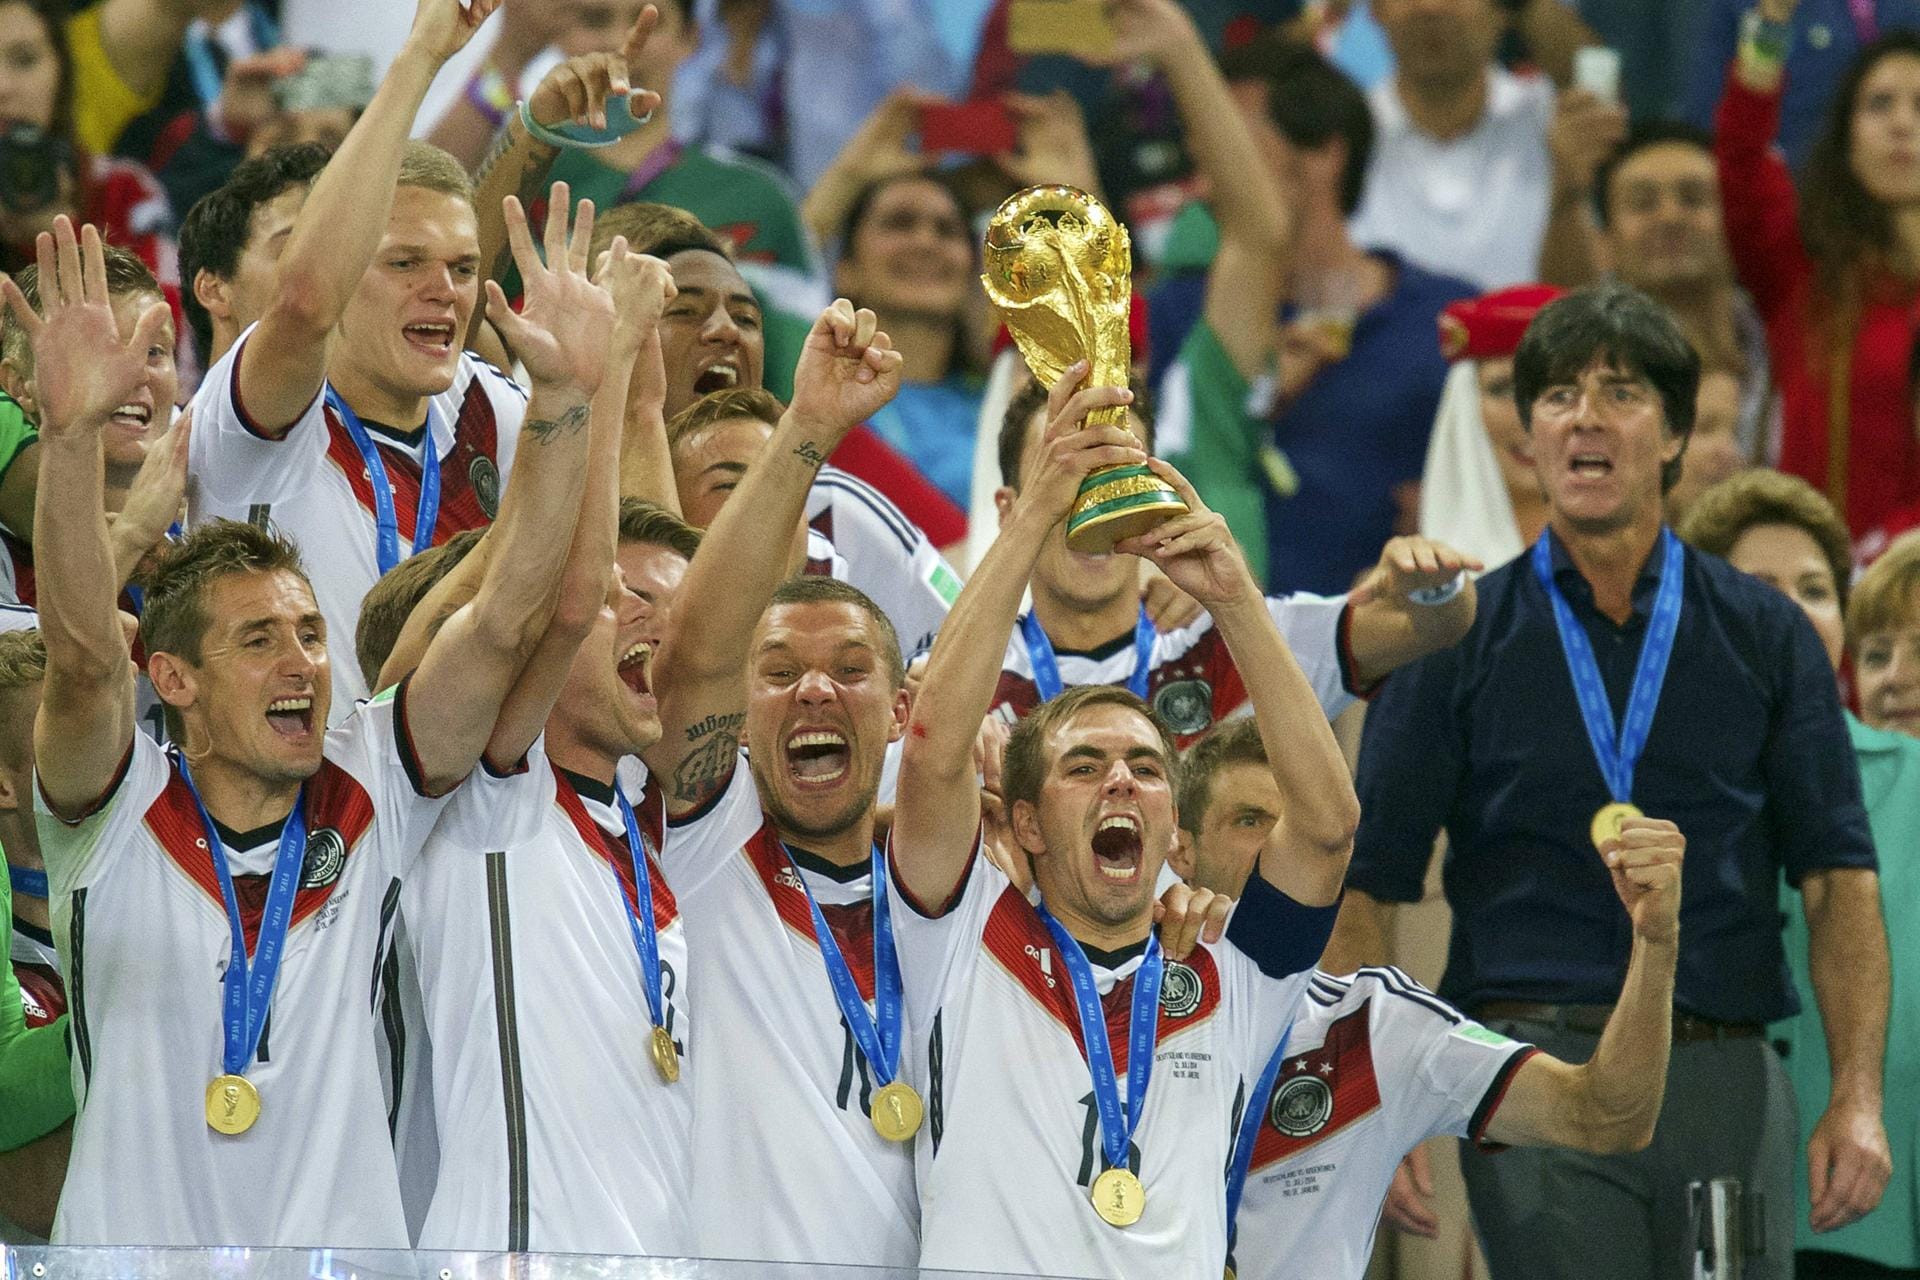 Der Höhepunkt einer unglaublichen Karriere: Am 13. Juli 2014 stemmt DFB-Kapitän Philipp Lahm den WM-Pokal in den Abendhimmel von Rio de Janeiro. Und so begann die lange Reise bis ins legendäre Maracanã...